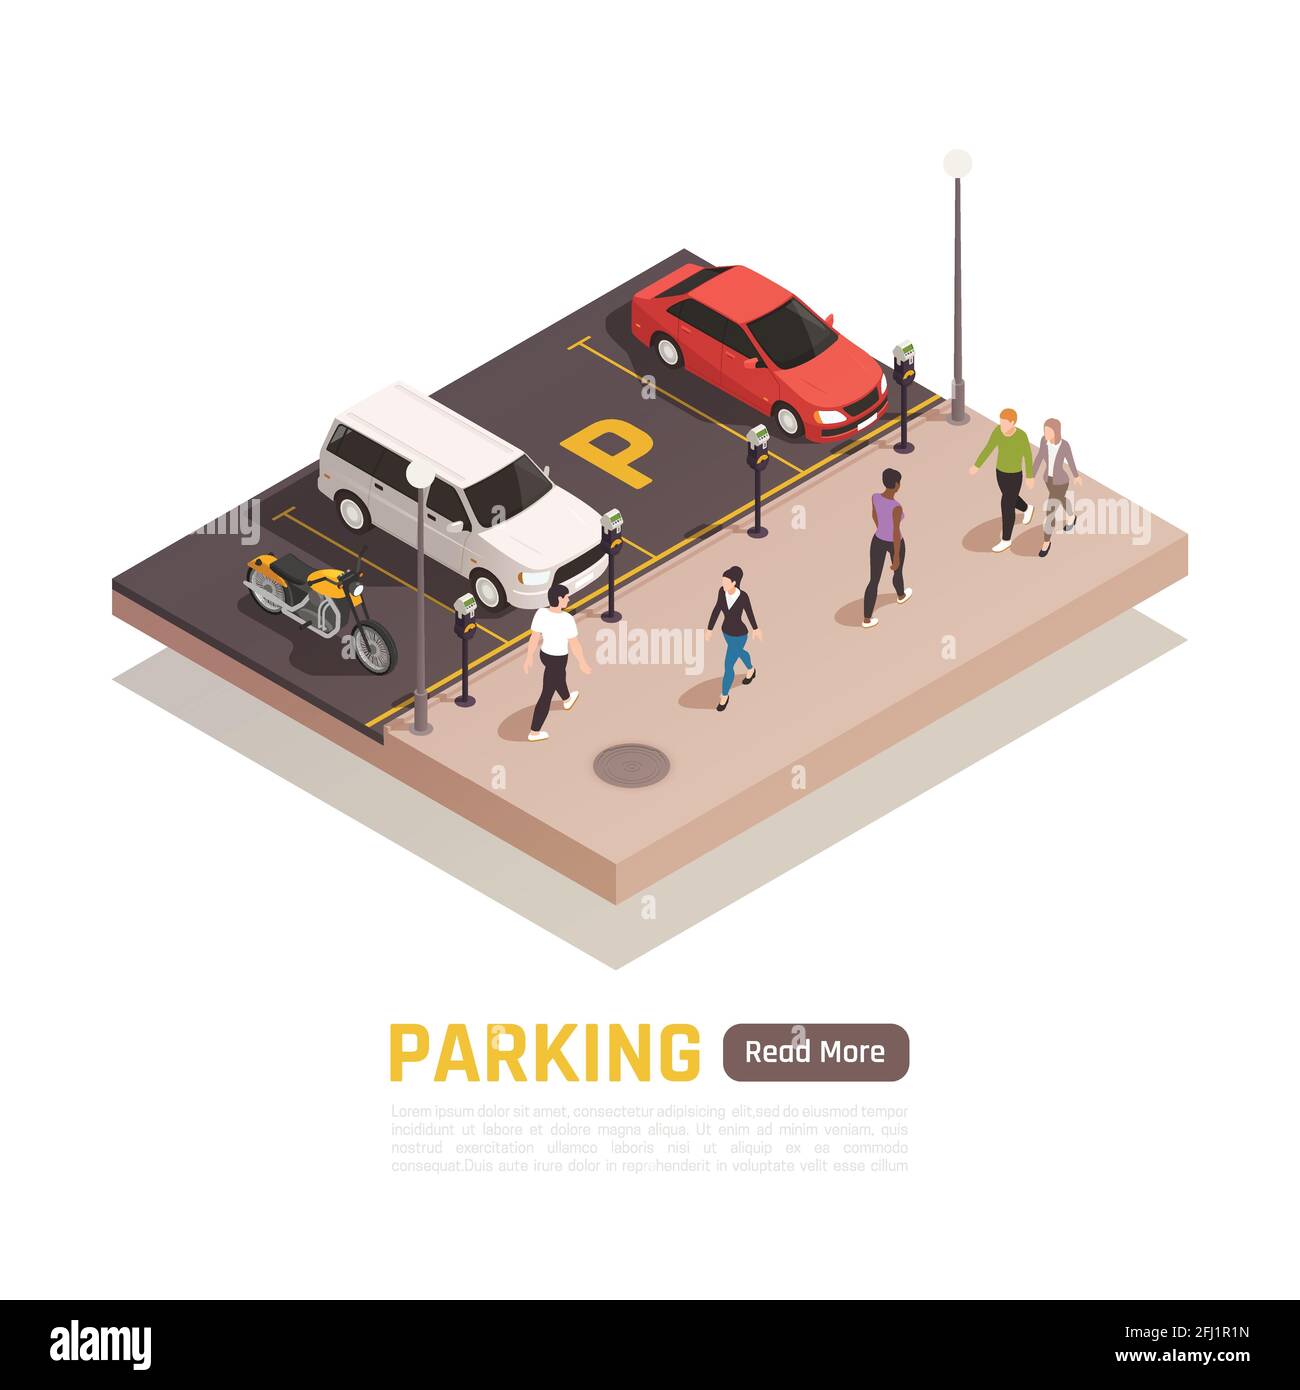 Senkrechtes Parken entlang Gehweg isometrische Web-Seite Zusammensetzung mit geparkt Autos Motorrad vorbei Fußgänger Vektor-Illustration Stock Vektor